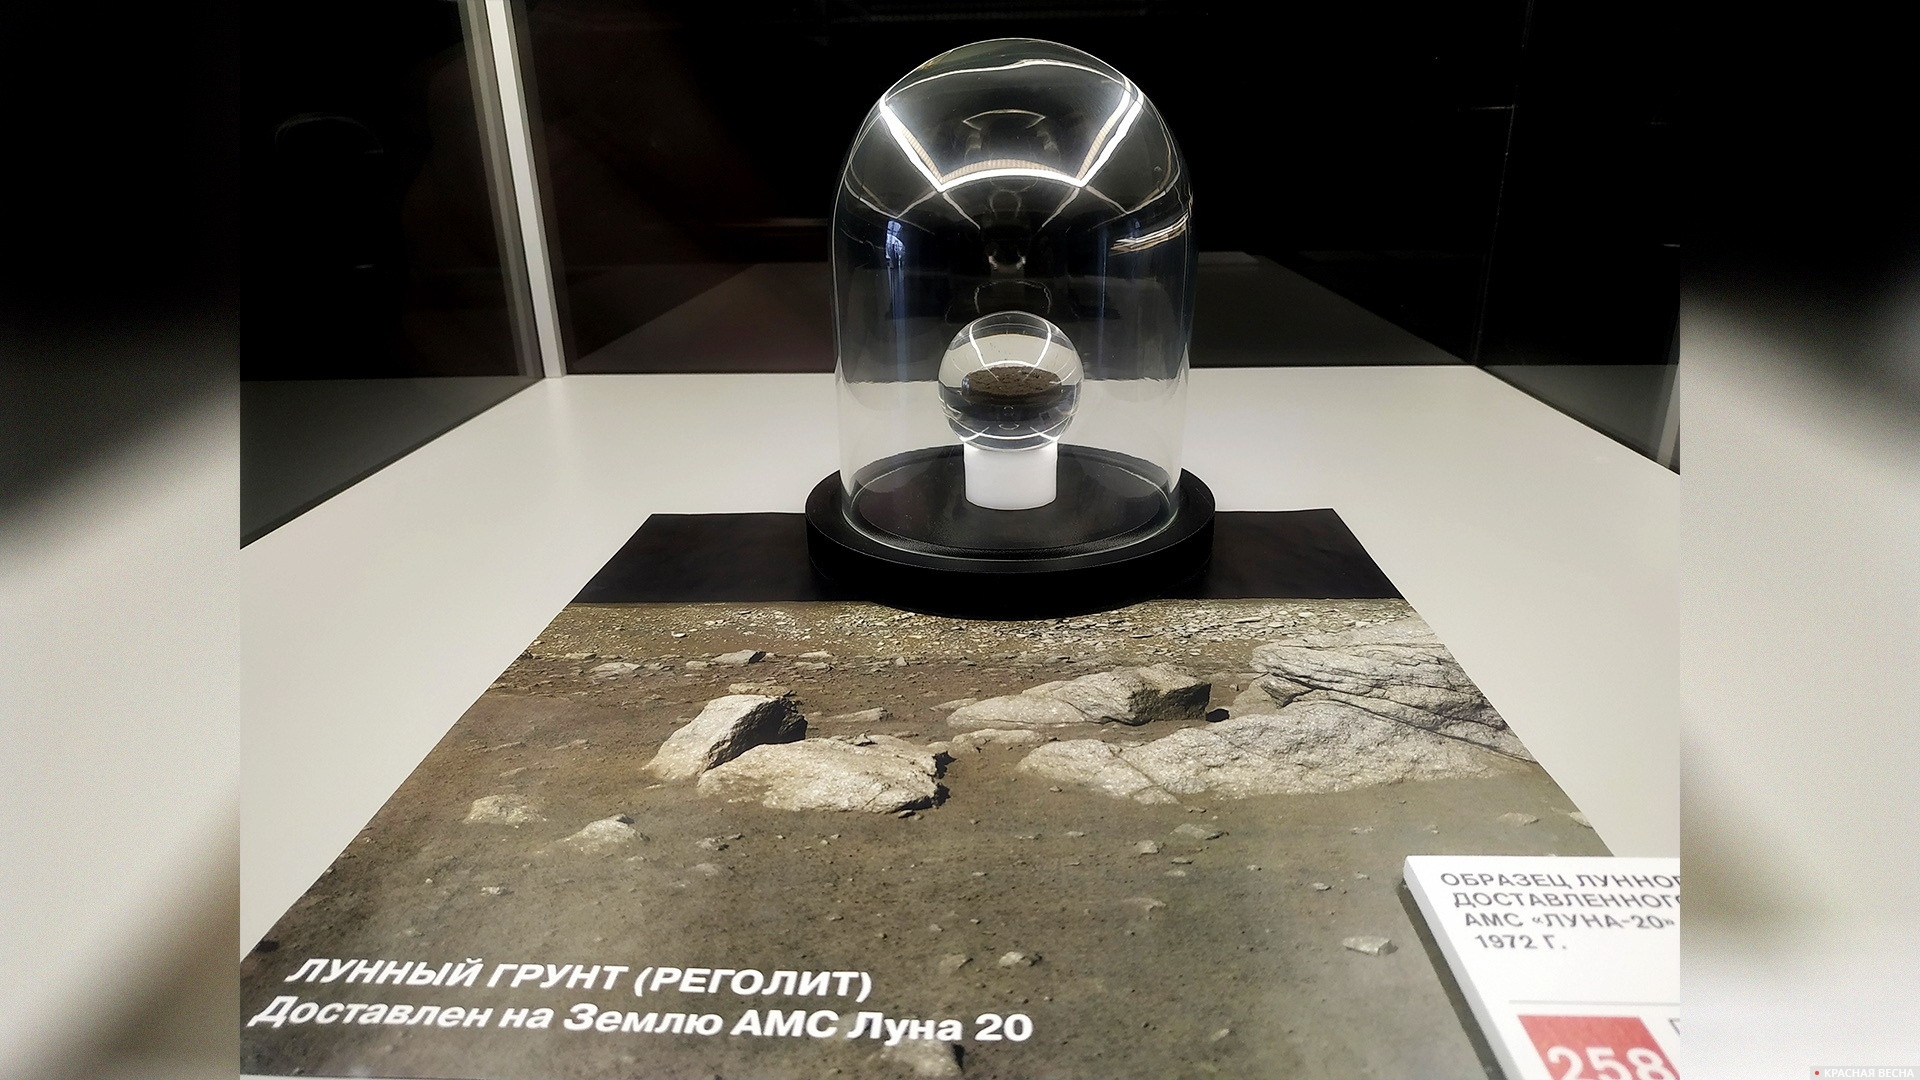 Лунный грунт (реголит). Образец доставлен АМС «Луна-20» в 1972 г. Павильон «Космос» на ВДНХ. Москва